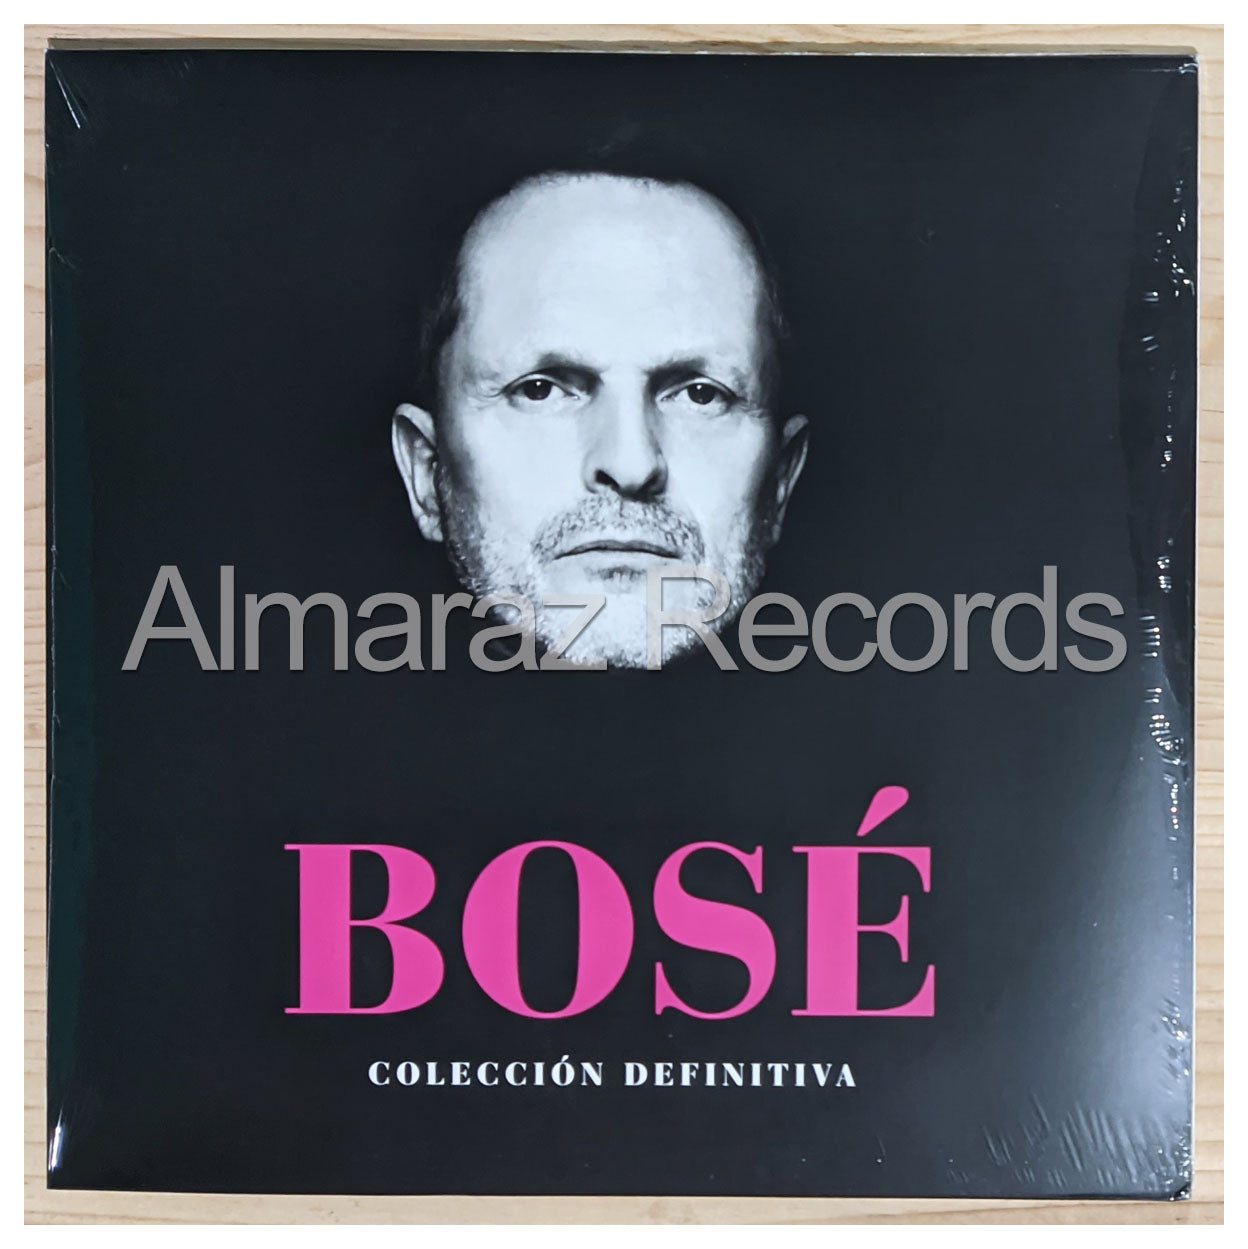 Miguel Bose Coleccion Definitiva Vinyl LP